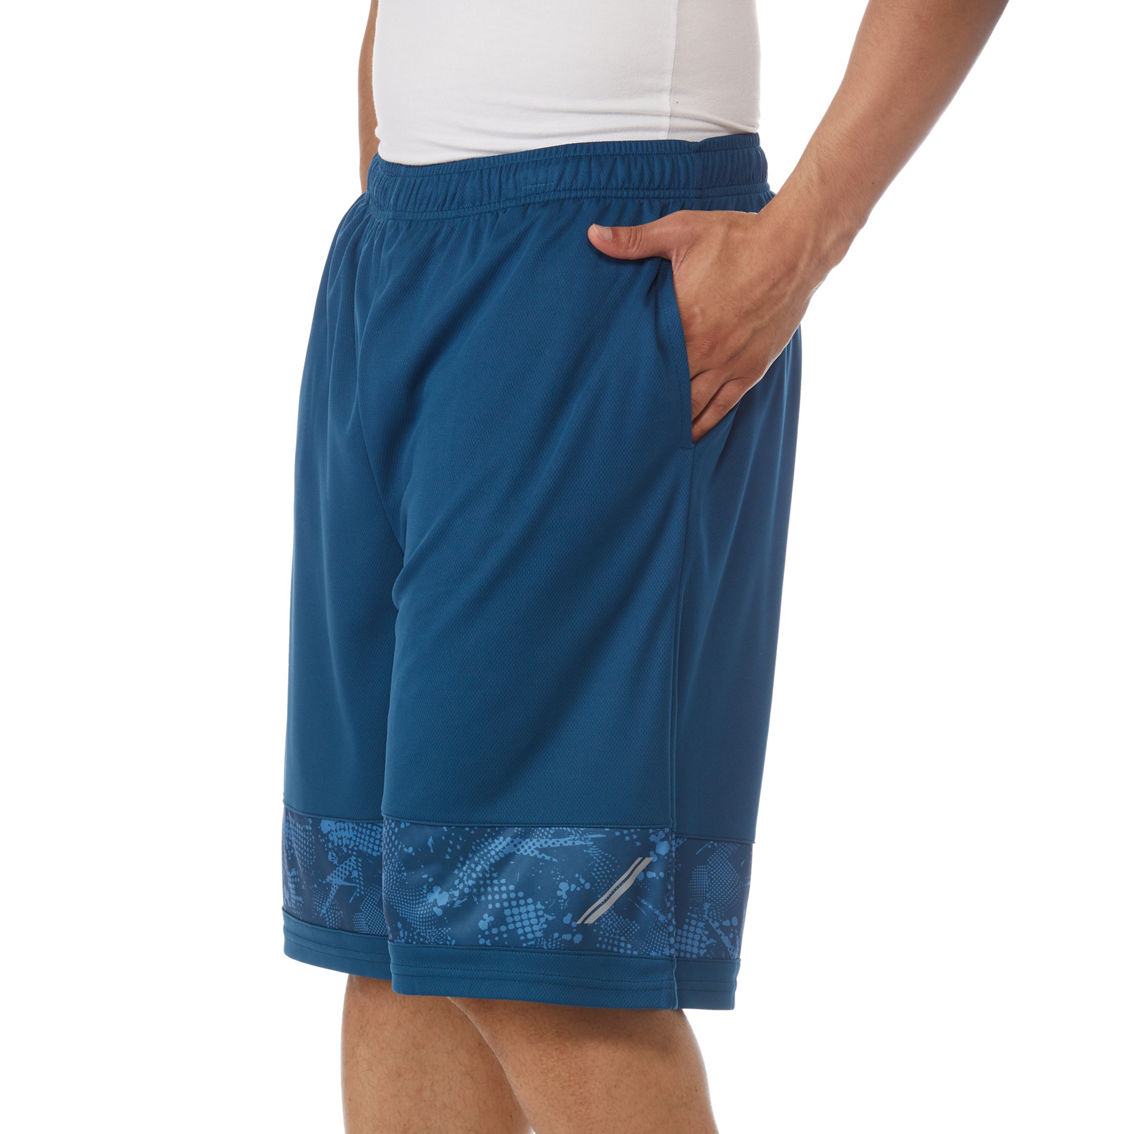 PBX Pro Polyester Shorts - Image 3 of 3